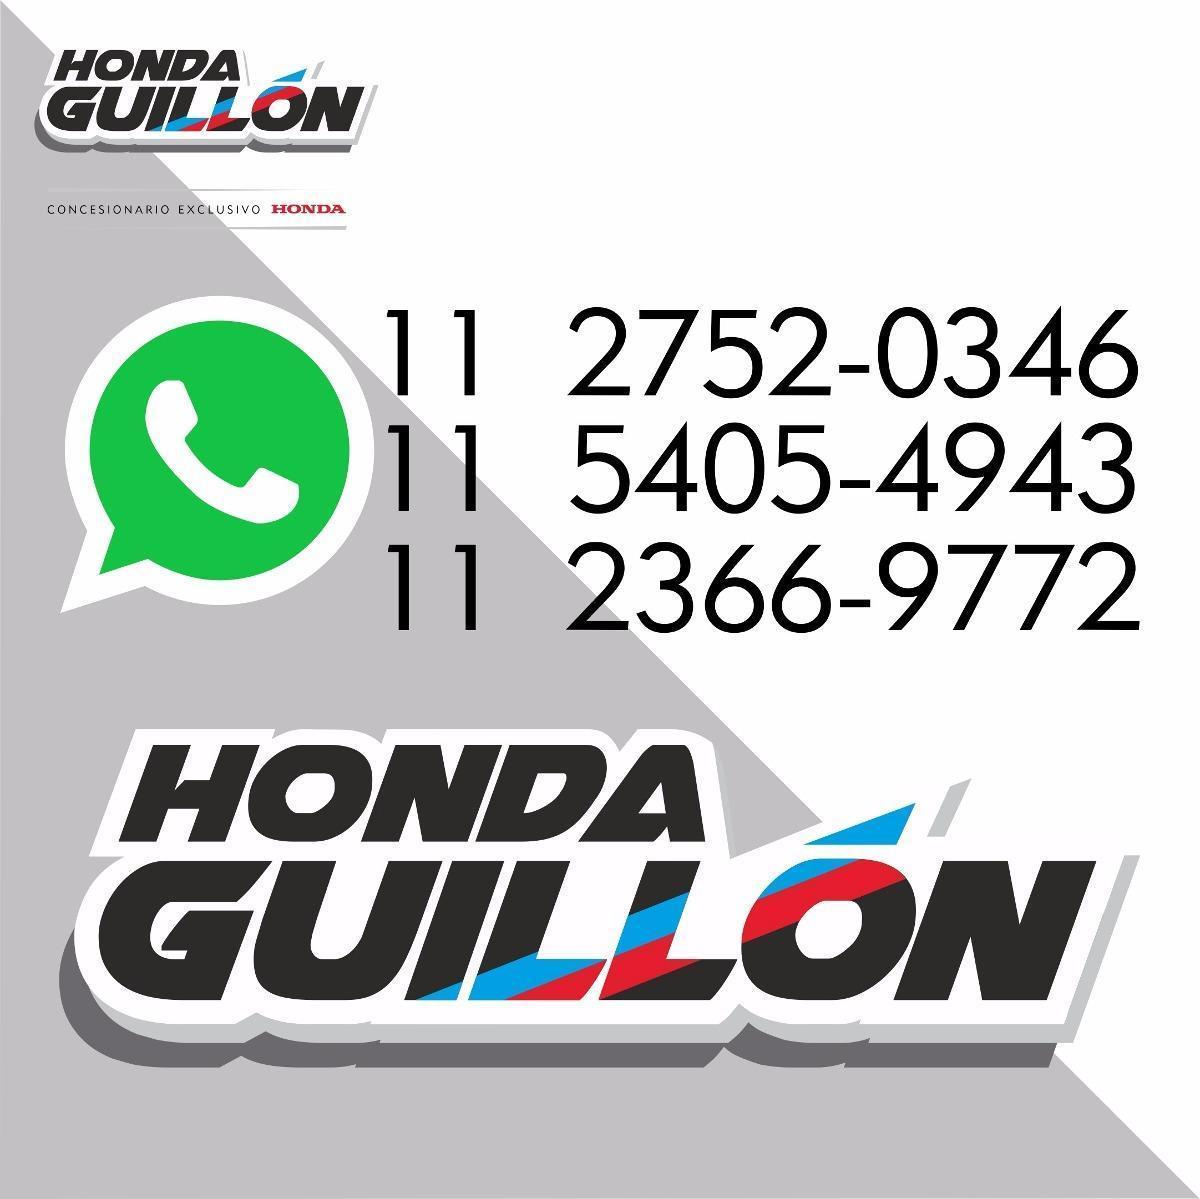 Honda Cg Titan 150 Garantia Extendida 3 Años Honda Guillon